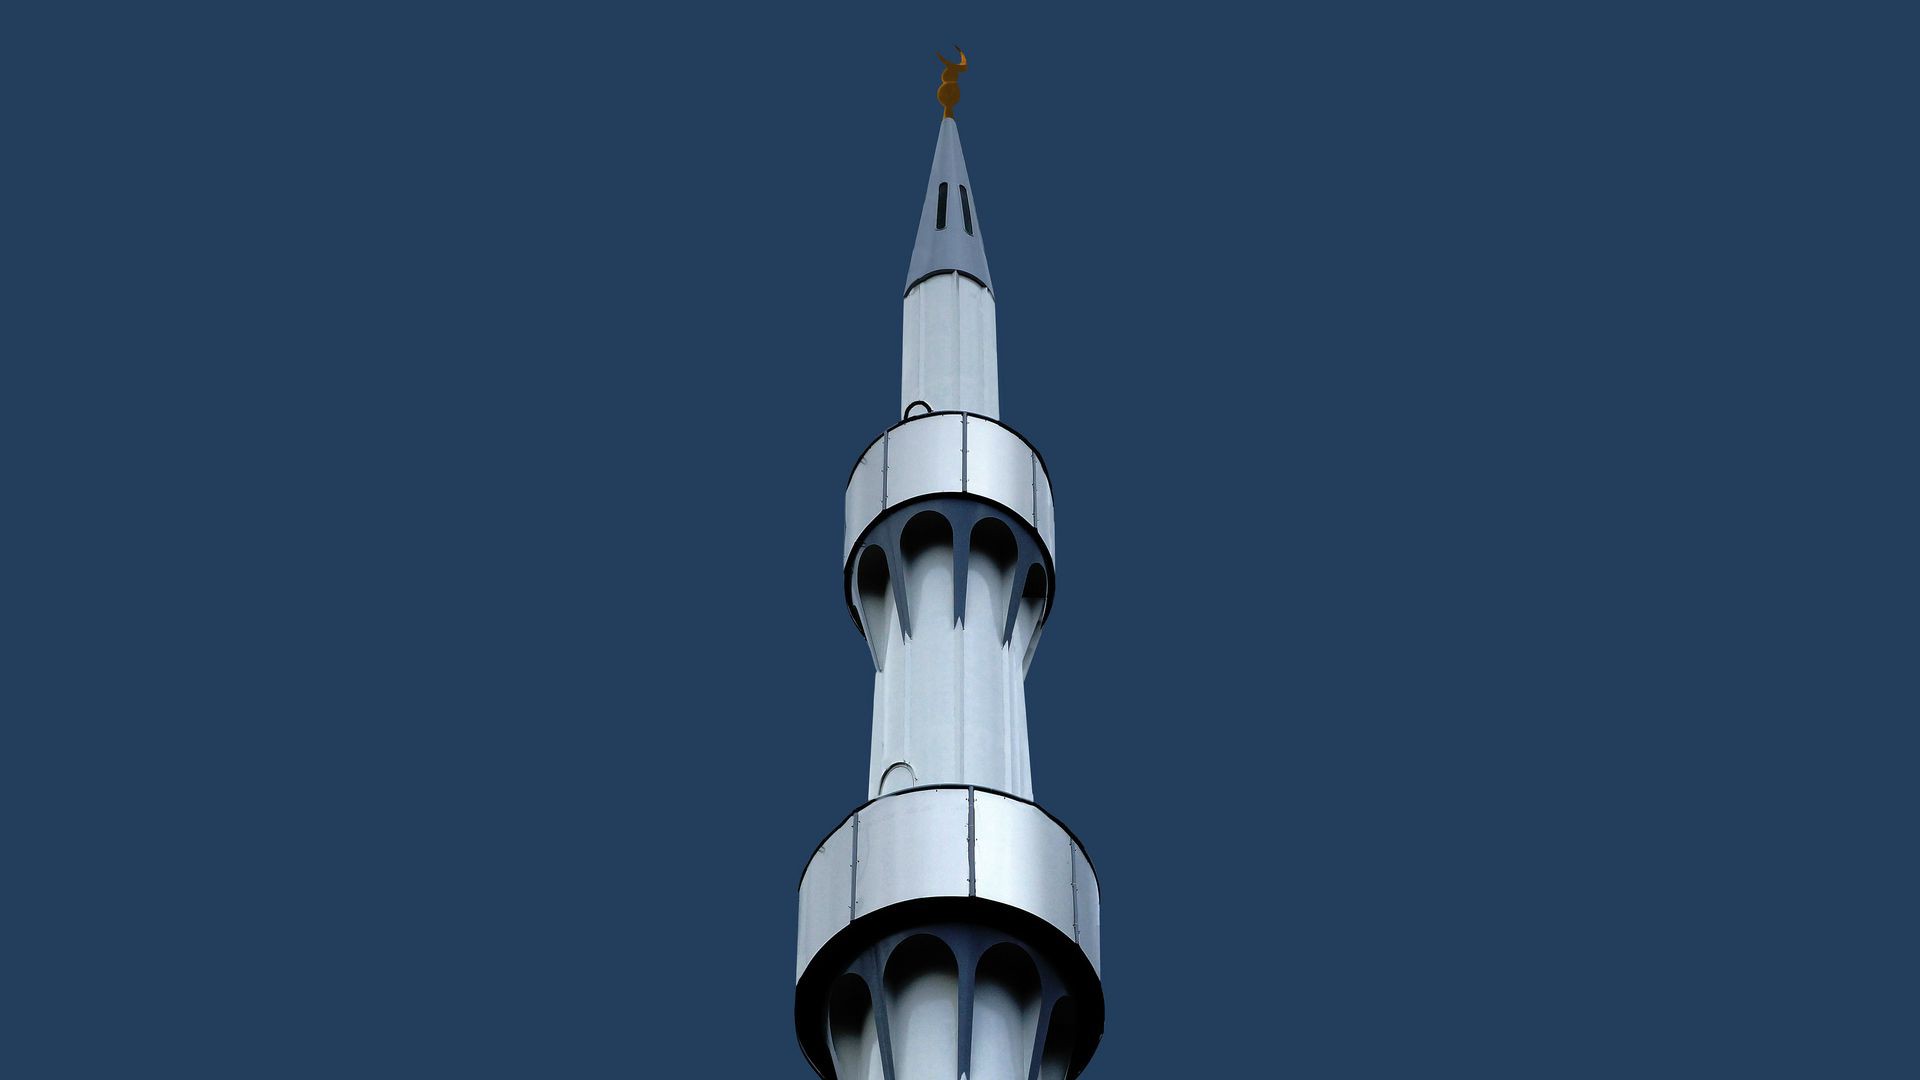 Le minaret sert pour l'appel à la prière (Photo:Roel Wijnants/Flickr/CC BY-NC 2.0)